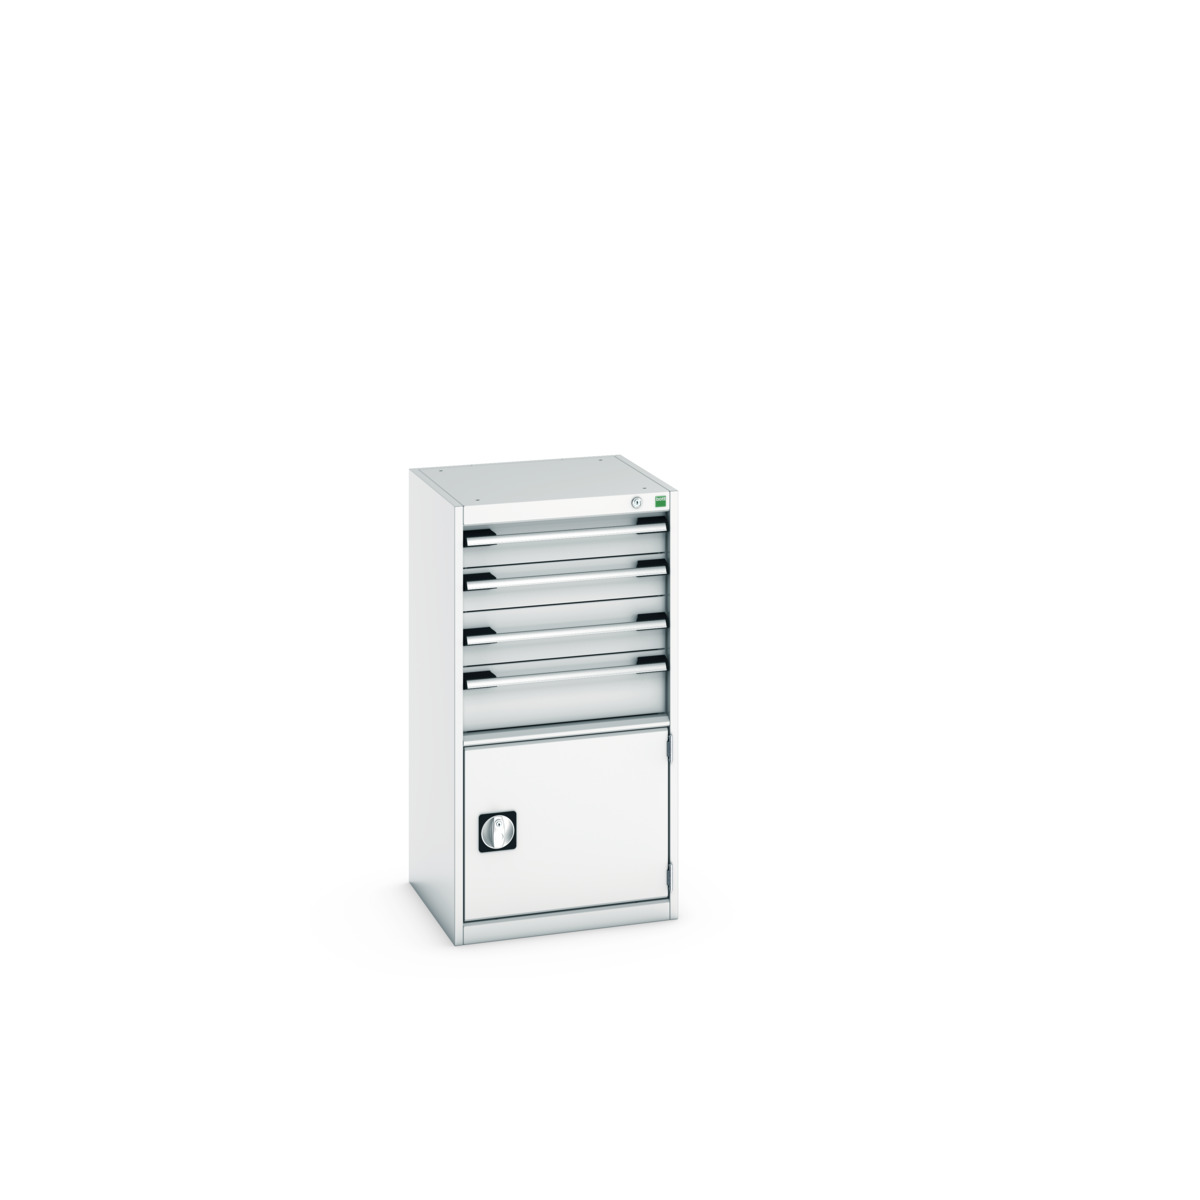 40010043.16V - cubio drawer-door cabinet